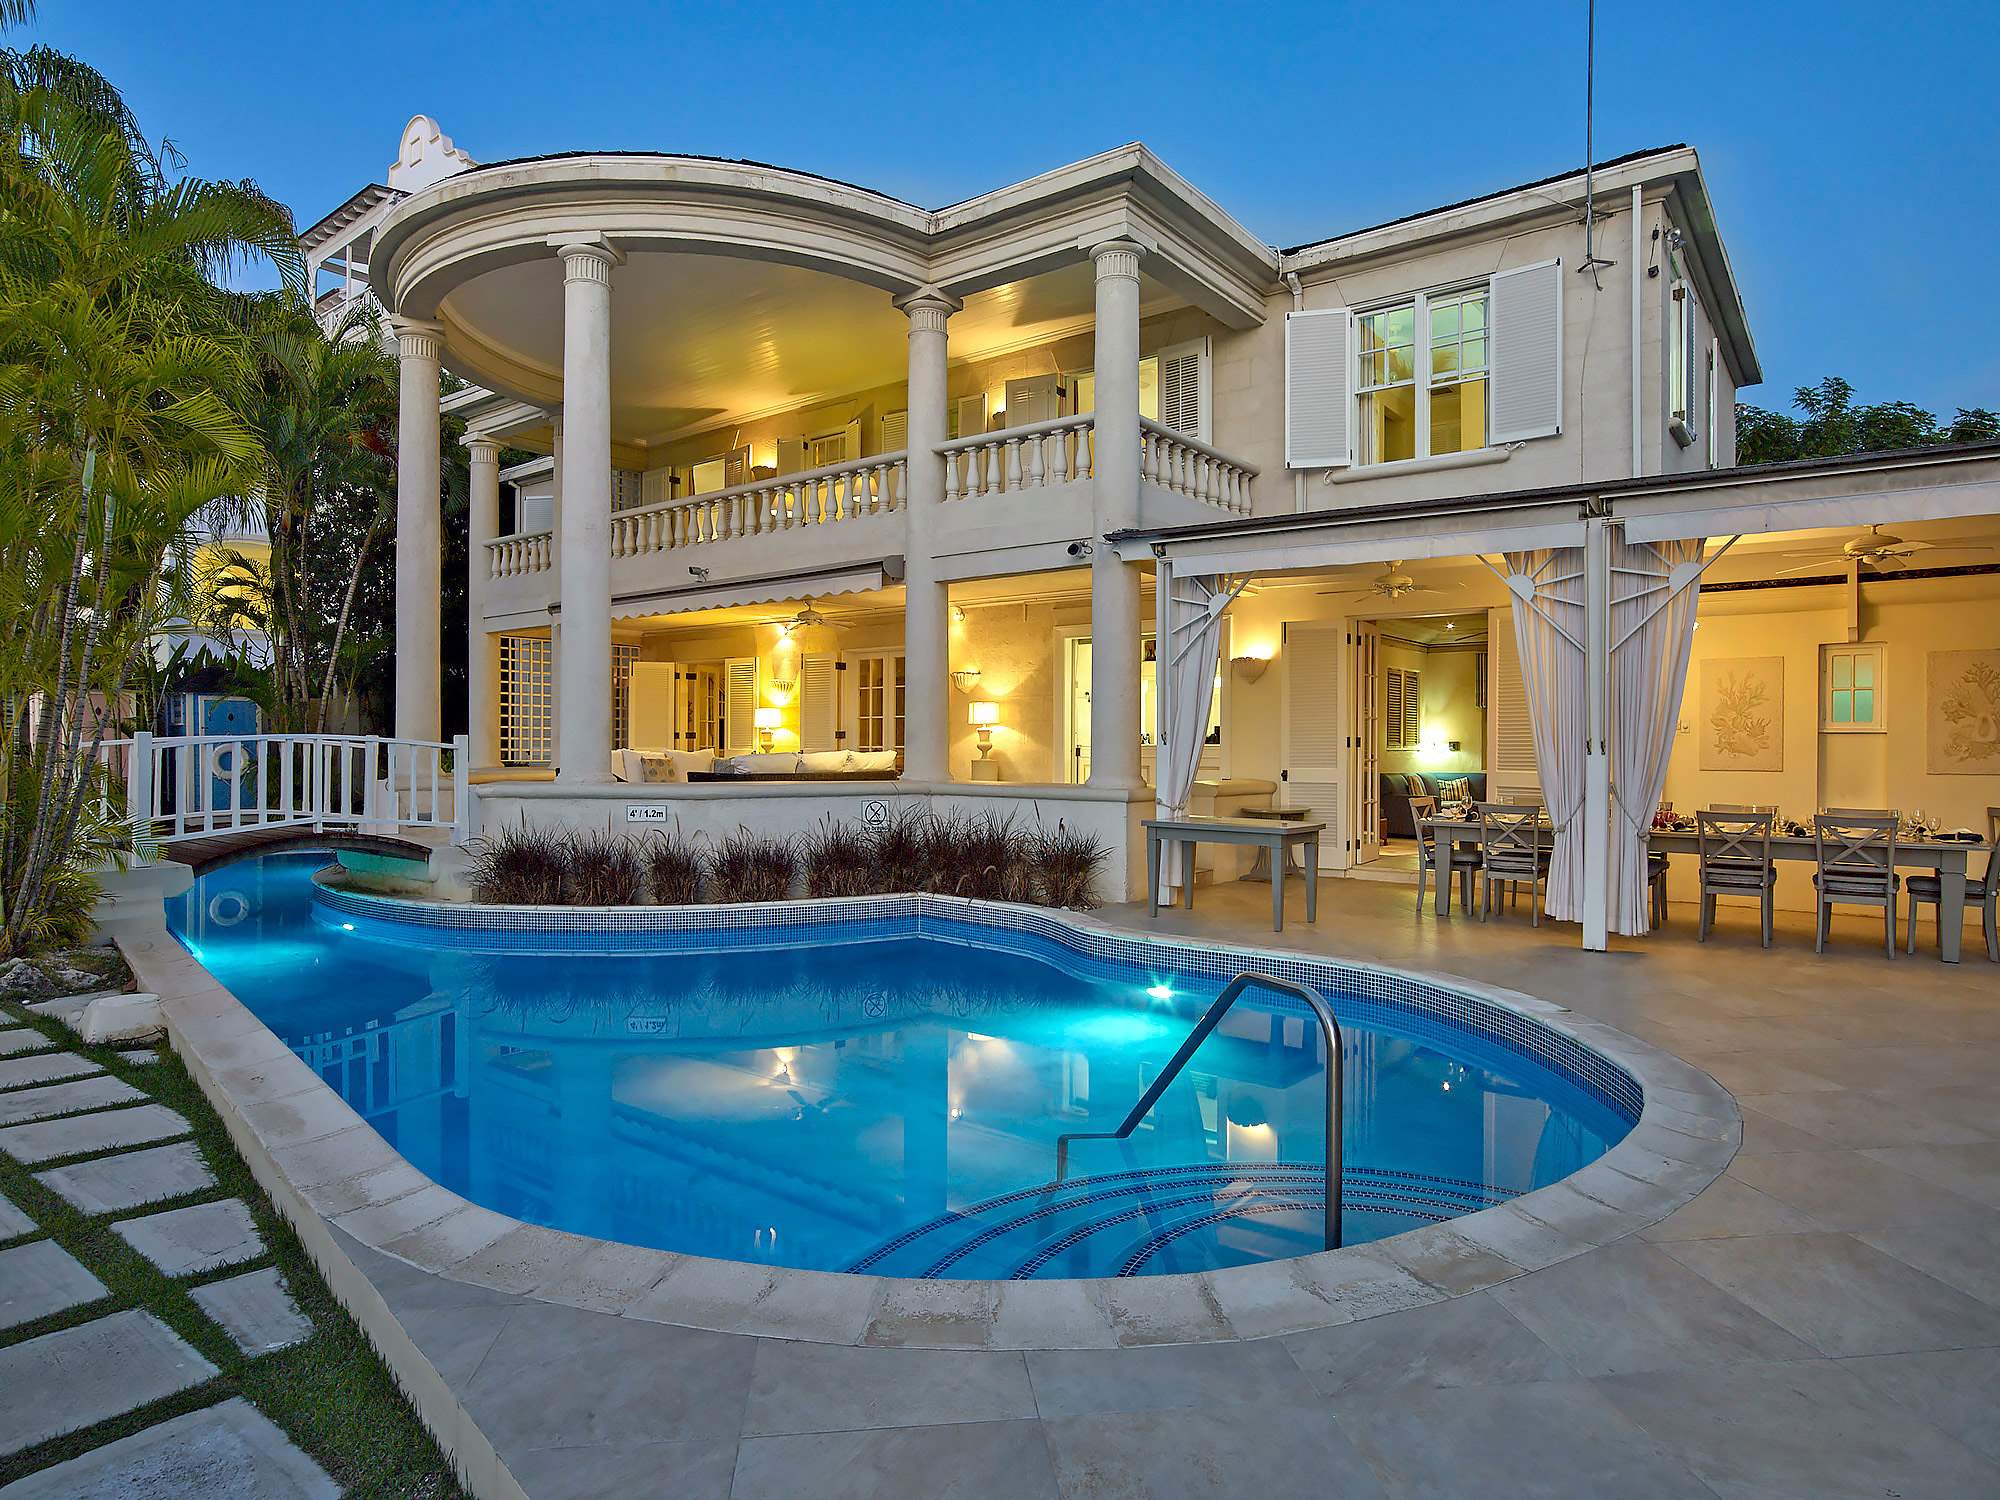 New Mansion, 4 bedroom villa in St. James & West Coast, Barbados Photo #5